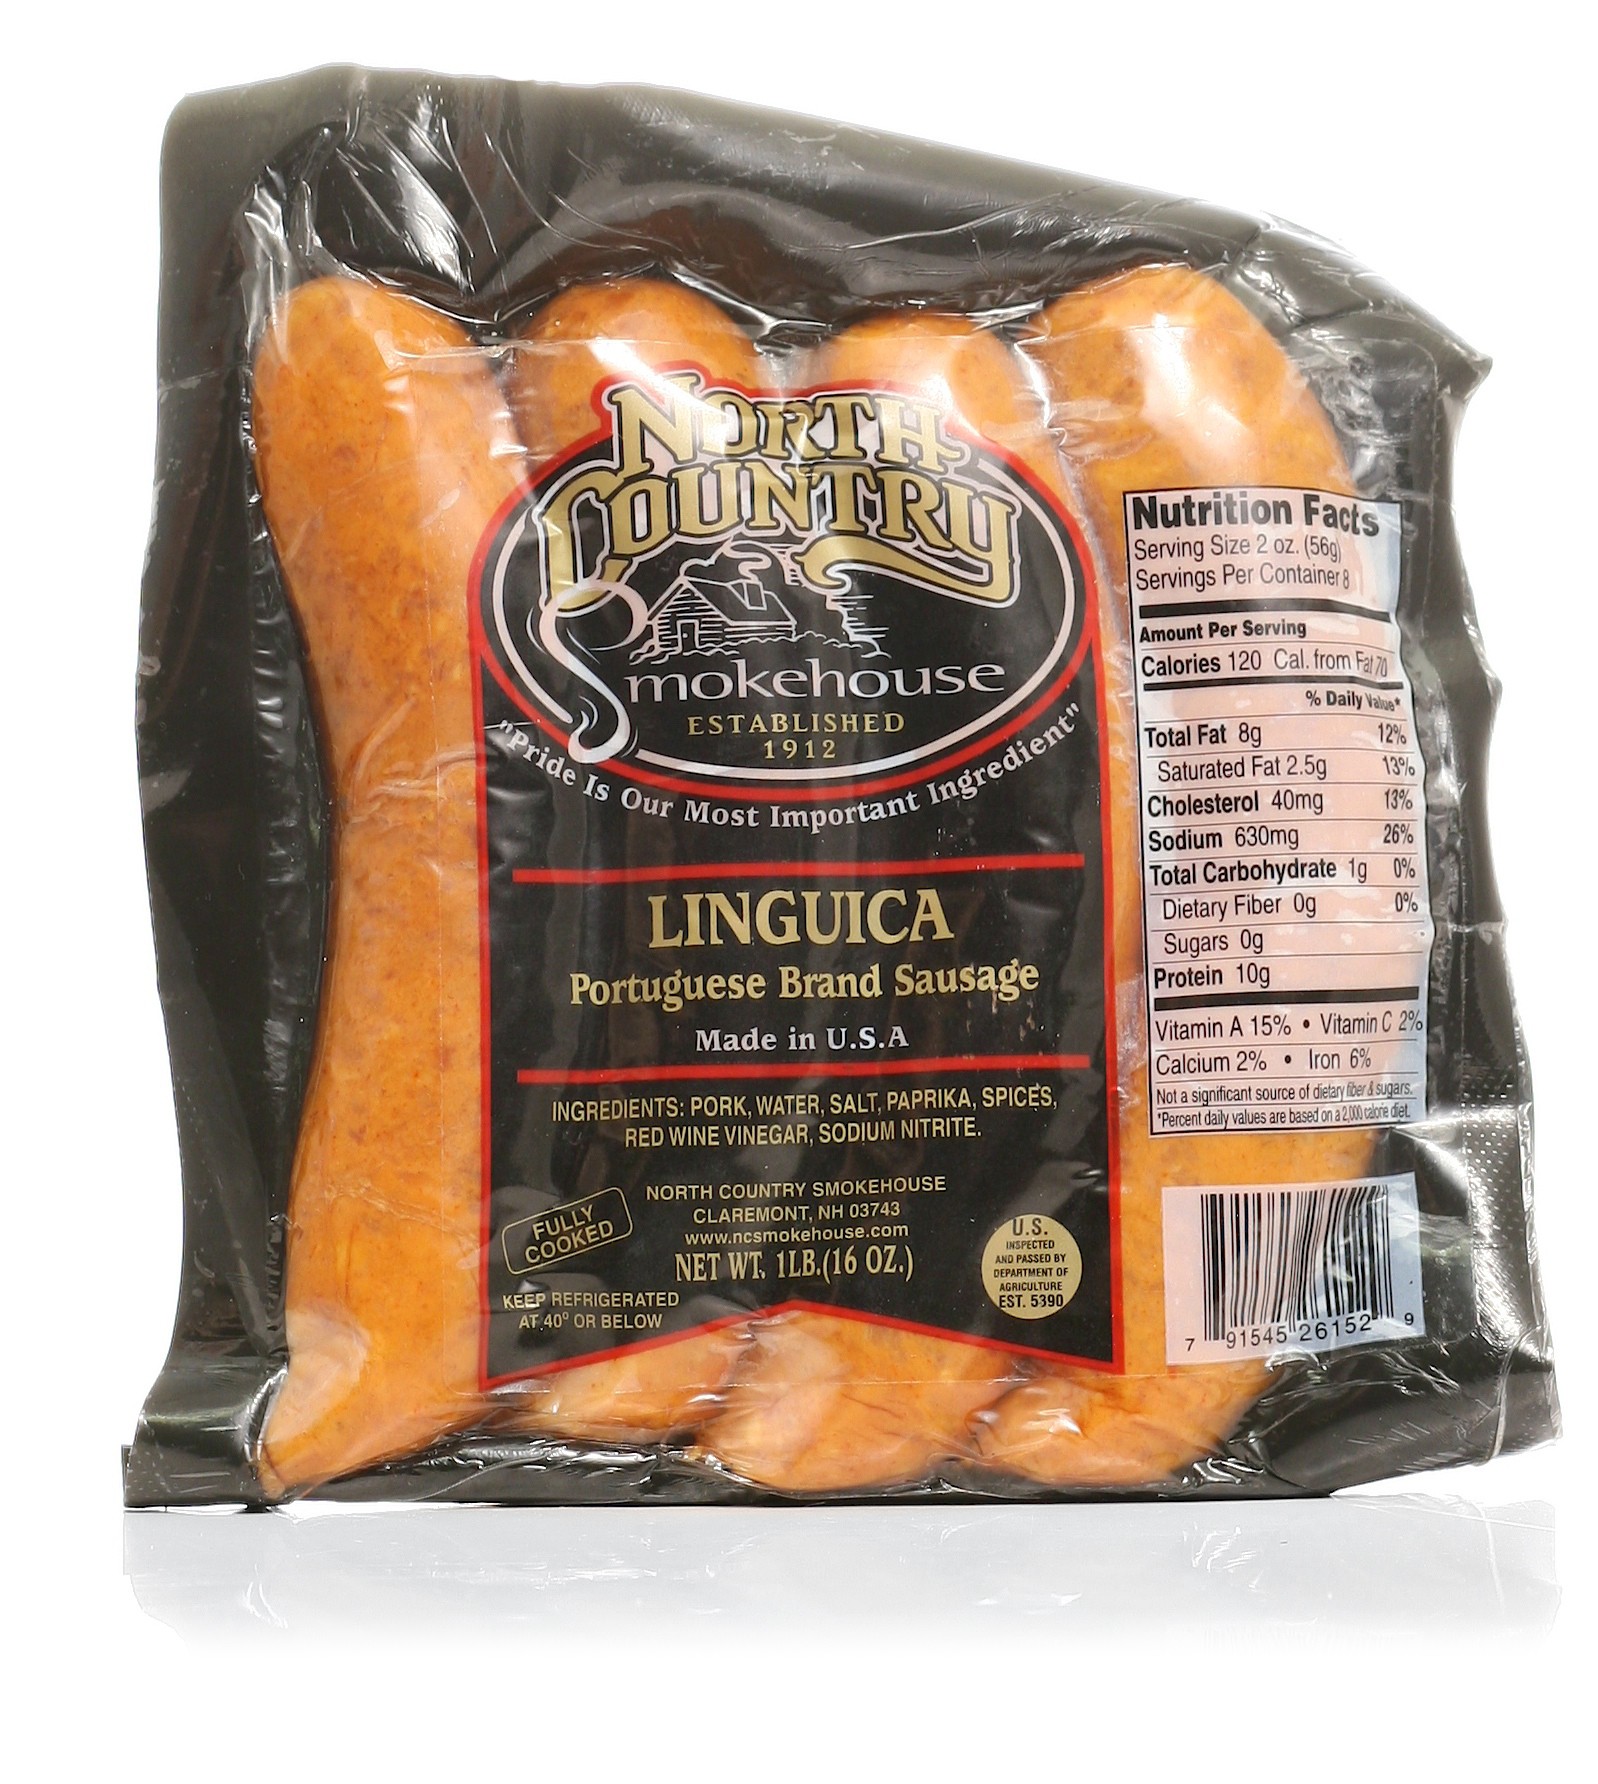 North County Linguica Portuguese Brand Sausage 16 oz.